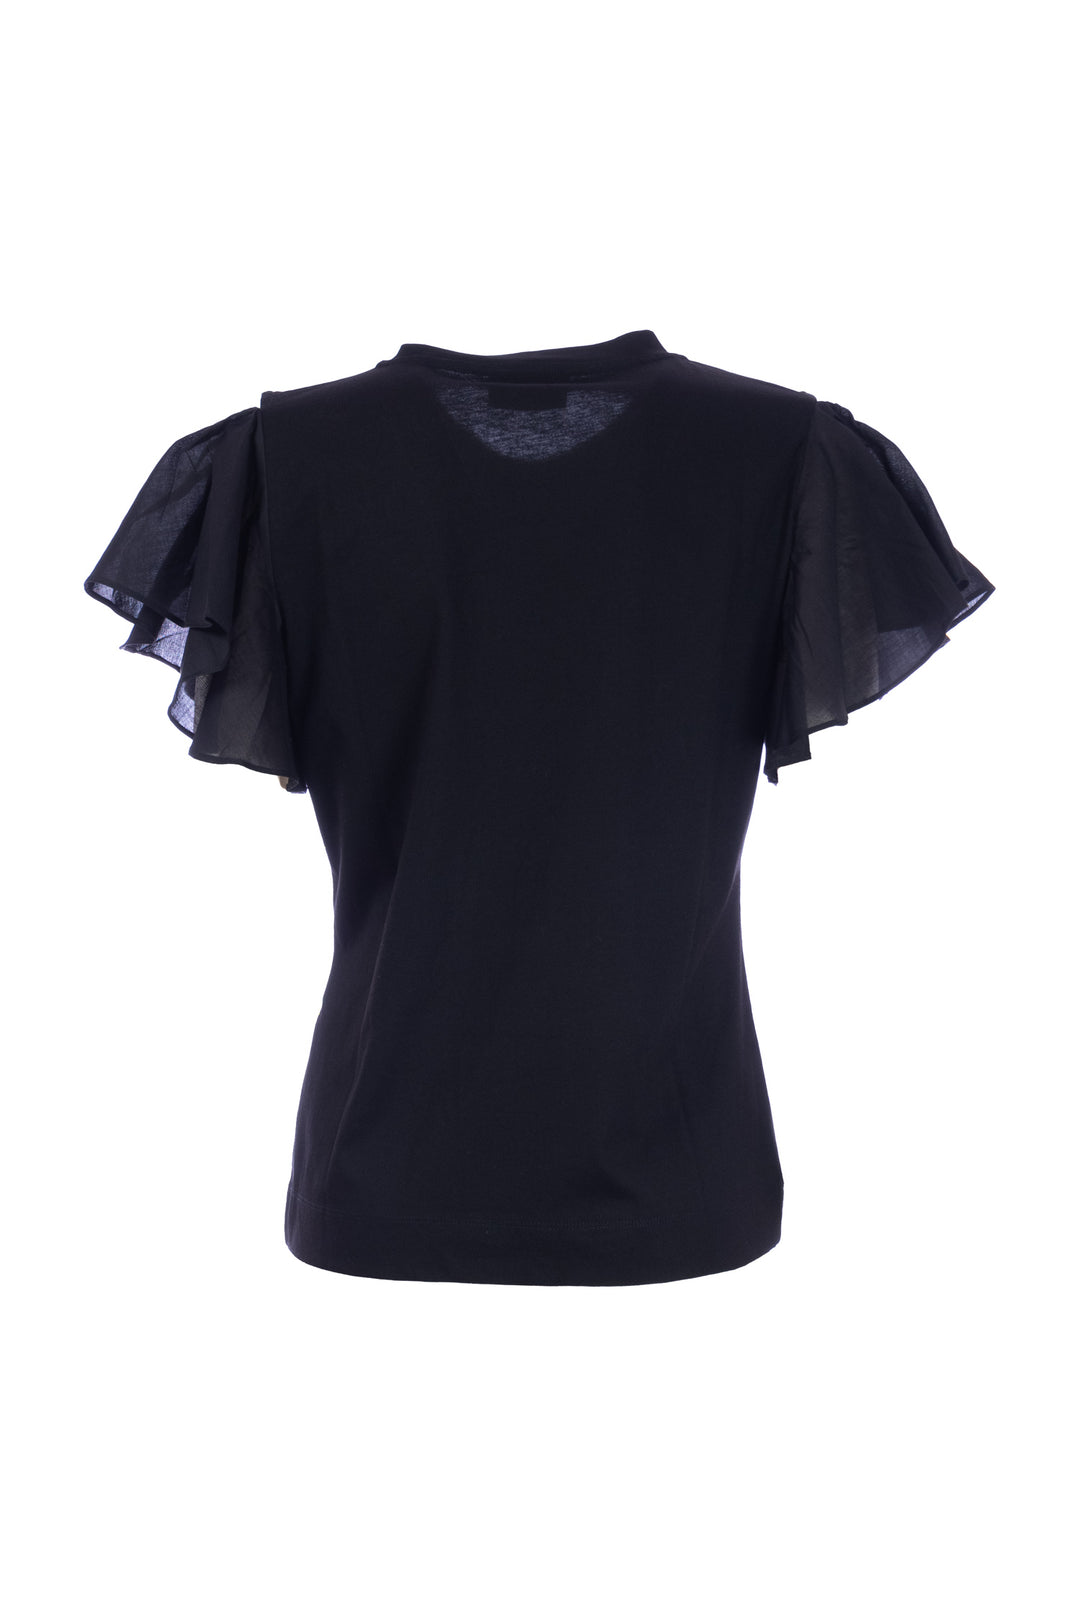 NENETTE T-shirt “DIPLOMATIC” nera in cotone senza spalline con stampa tramonto - Mancinelli 1954